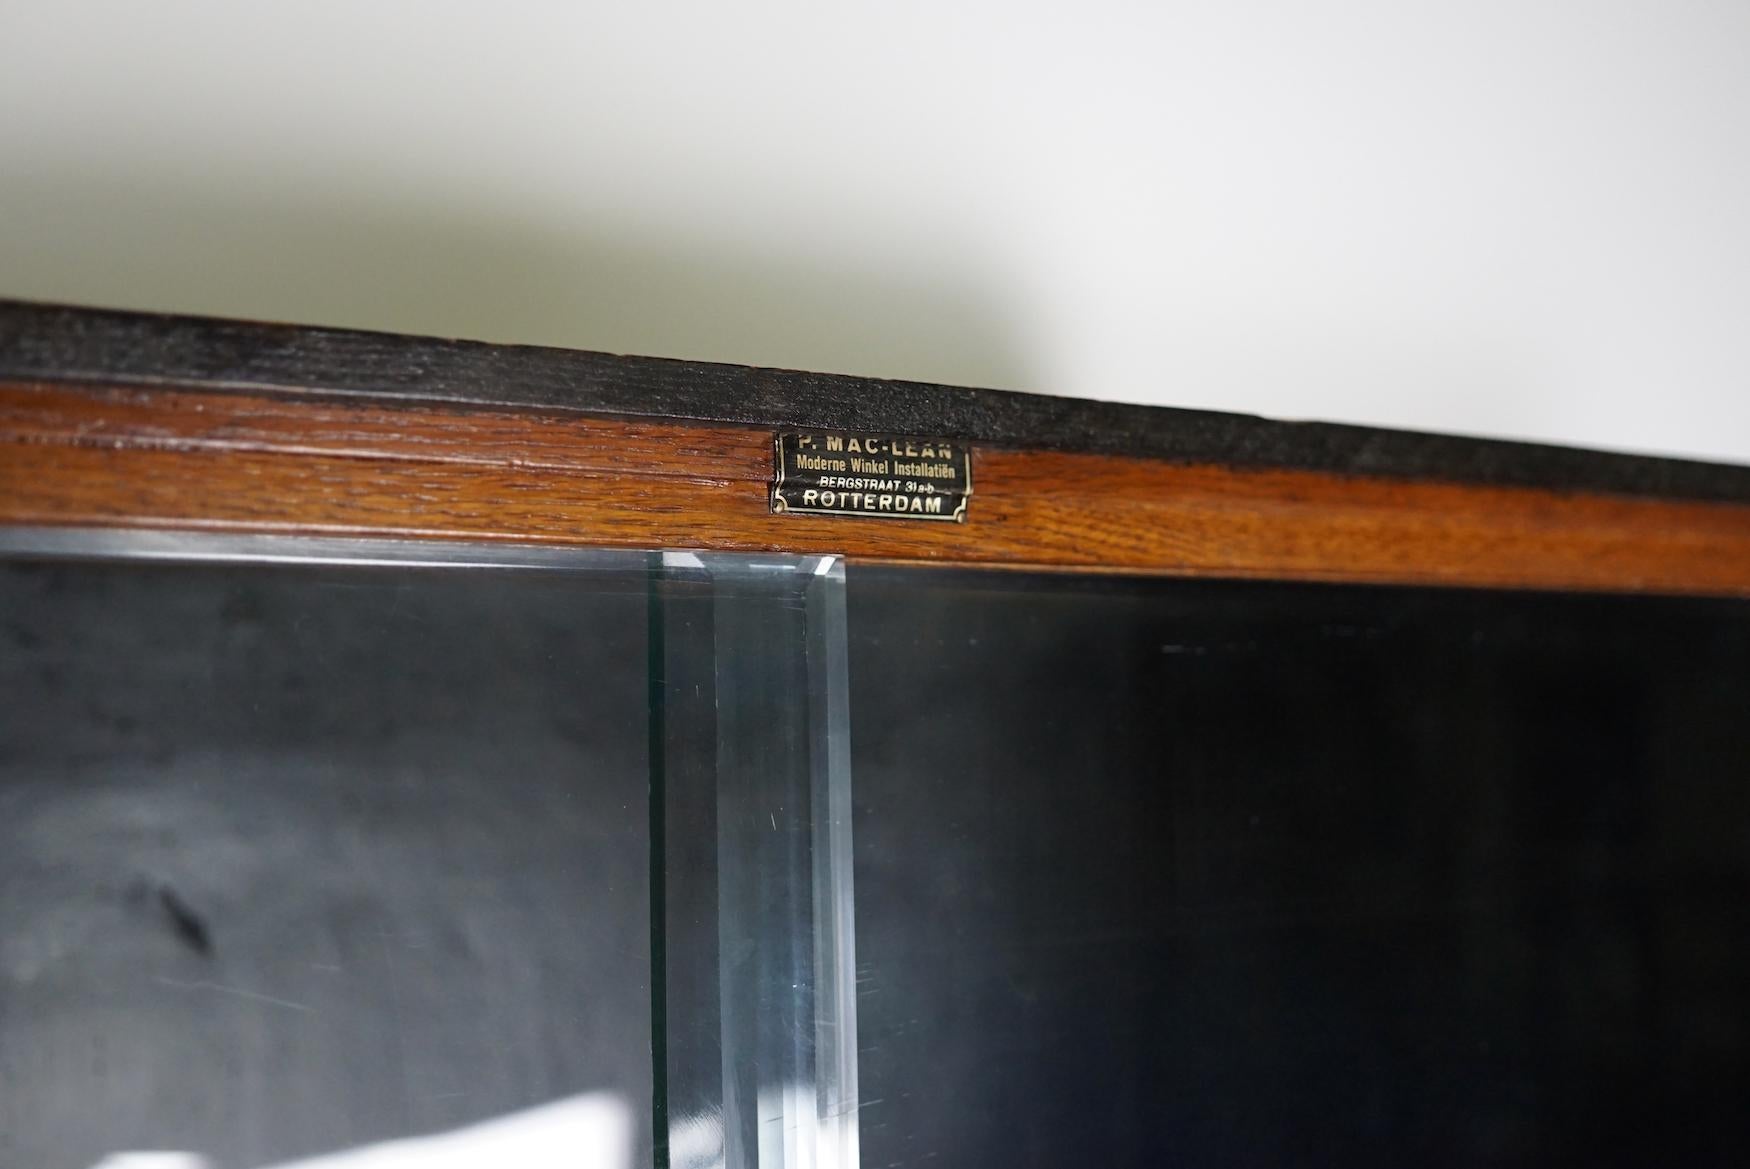 Ce meuble de mercerie a été fabriqué dans les années 1930 aux Pays-Bas. Cette pièce comporte 27 tiroirs en chêne avec ou sans façades en verre et poignées en métal. Il a été utilisé à l'origine dans un magasin de fournitures de couture et de tissus